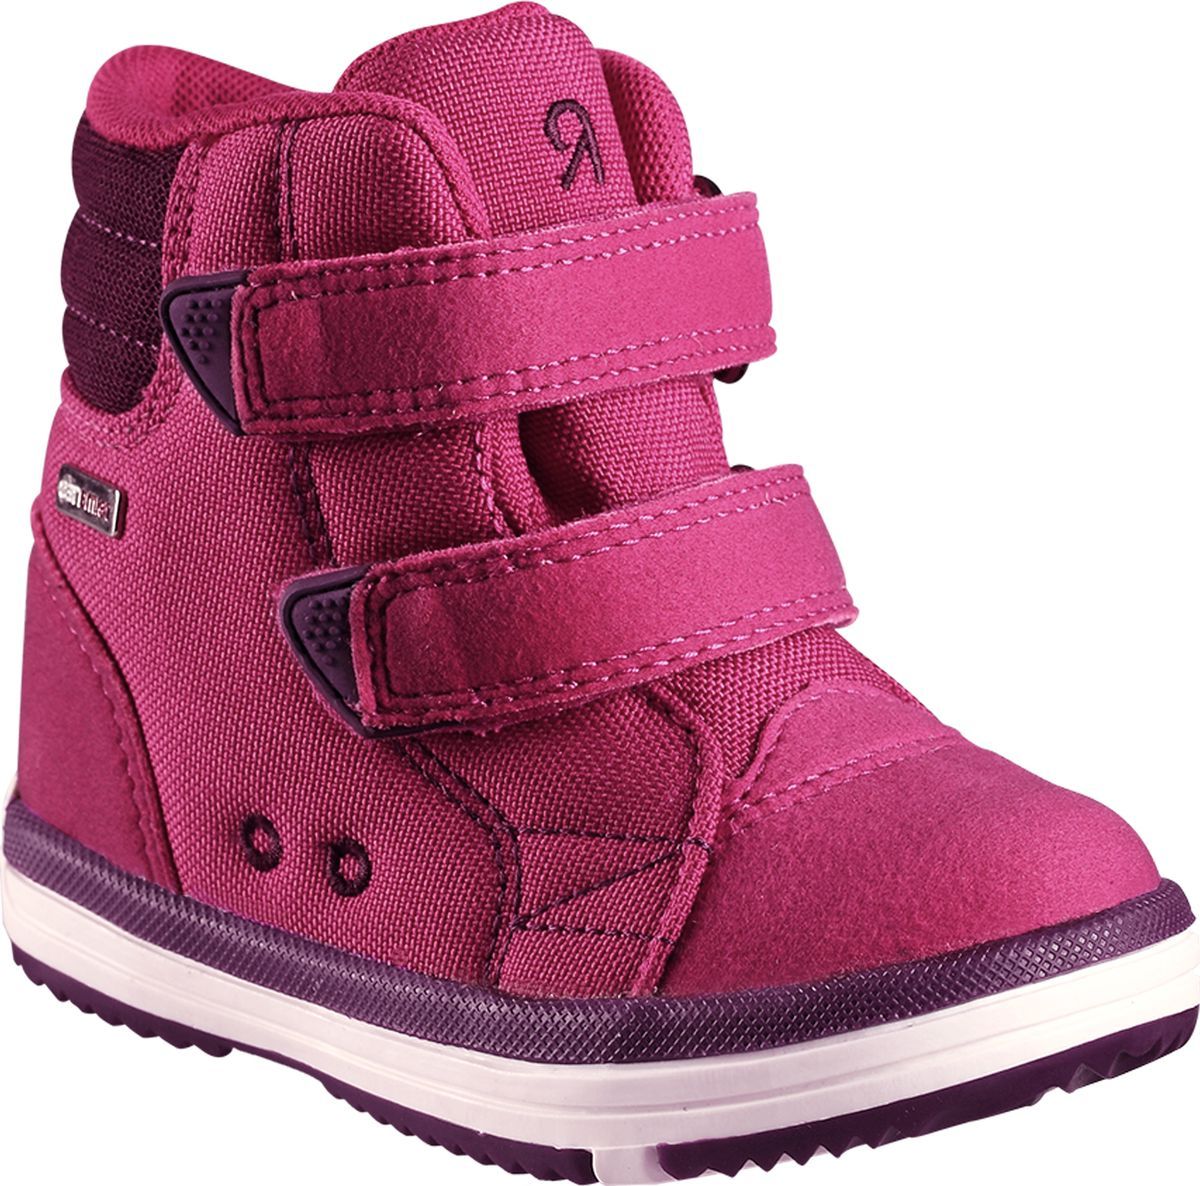 Ботинки детские Reima Patter, цвет: розовый. 5693443600. Размер 33